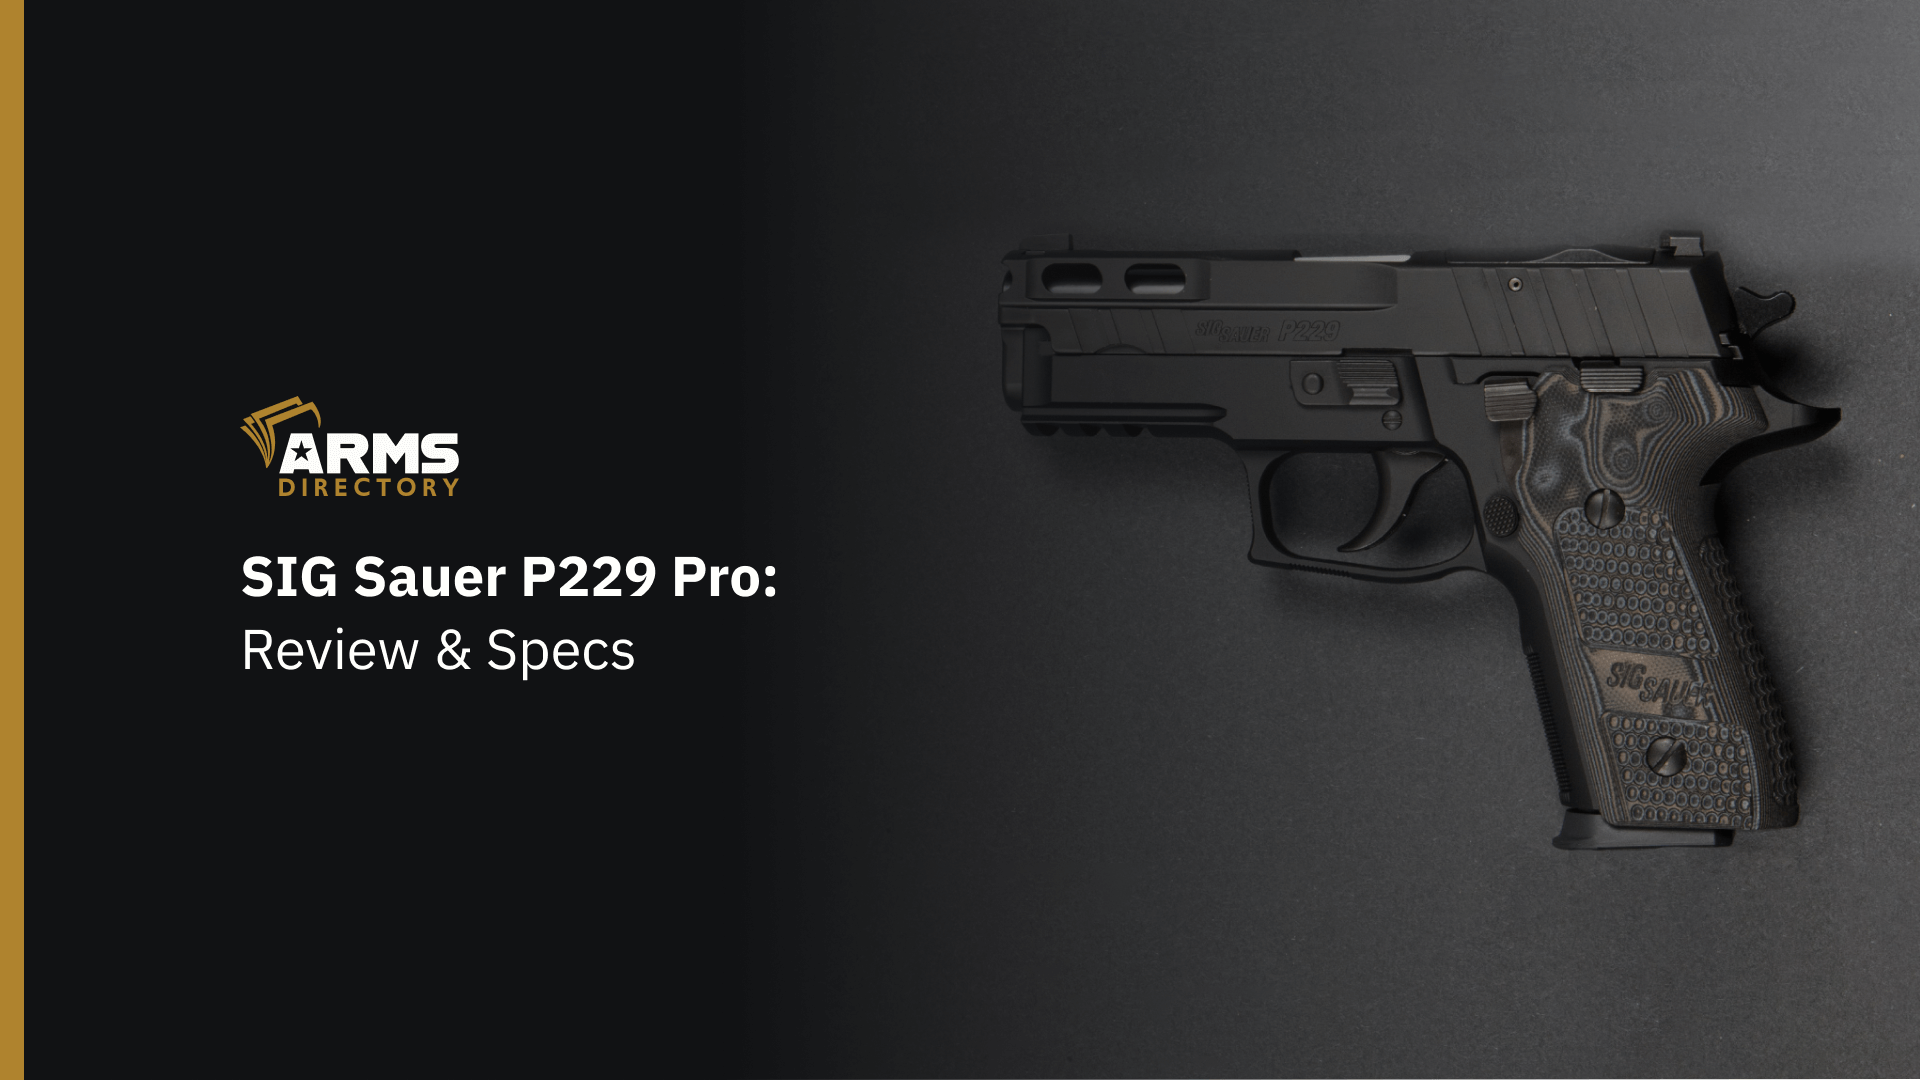 SIG SAUER P229 Pro: Review & Specs